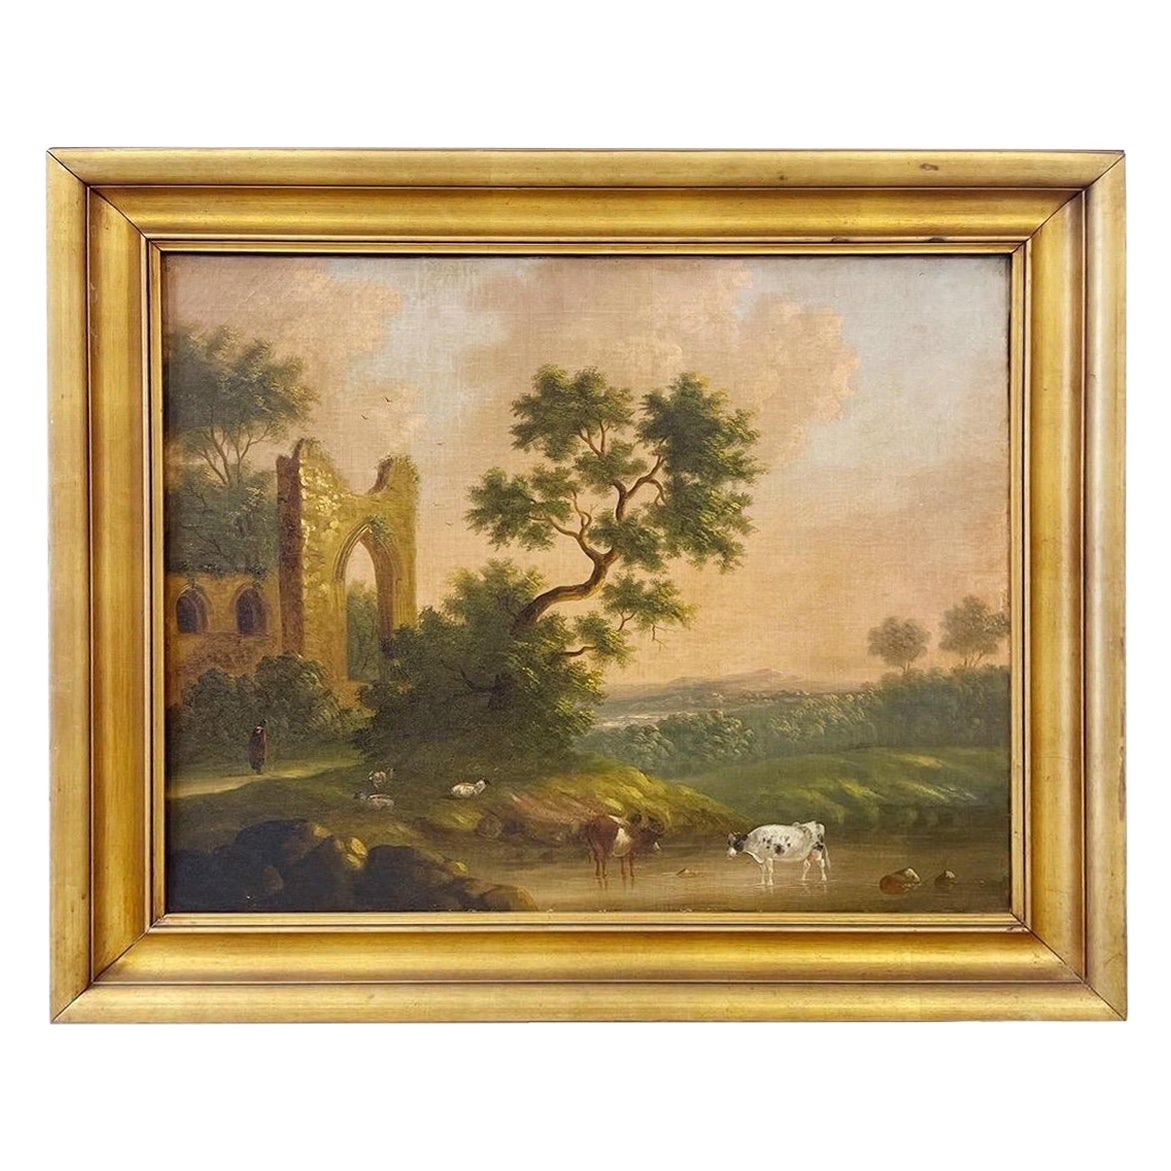 Ölgemälde auf Leinwand von Capriccio und Kuh-Landschaft, Englische Schule, 19. Jahrhundert